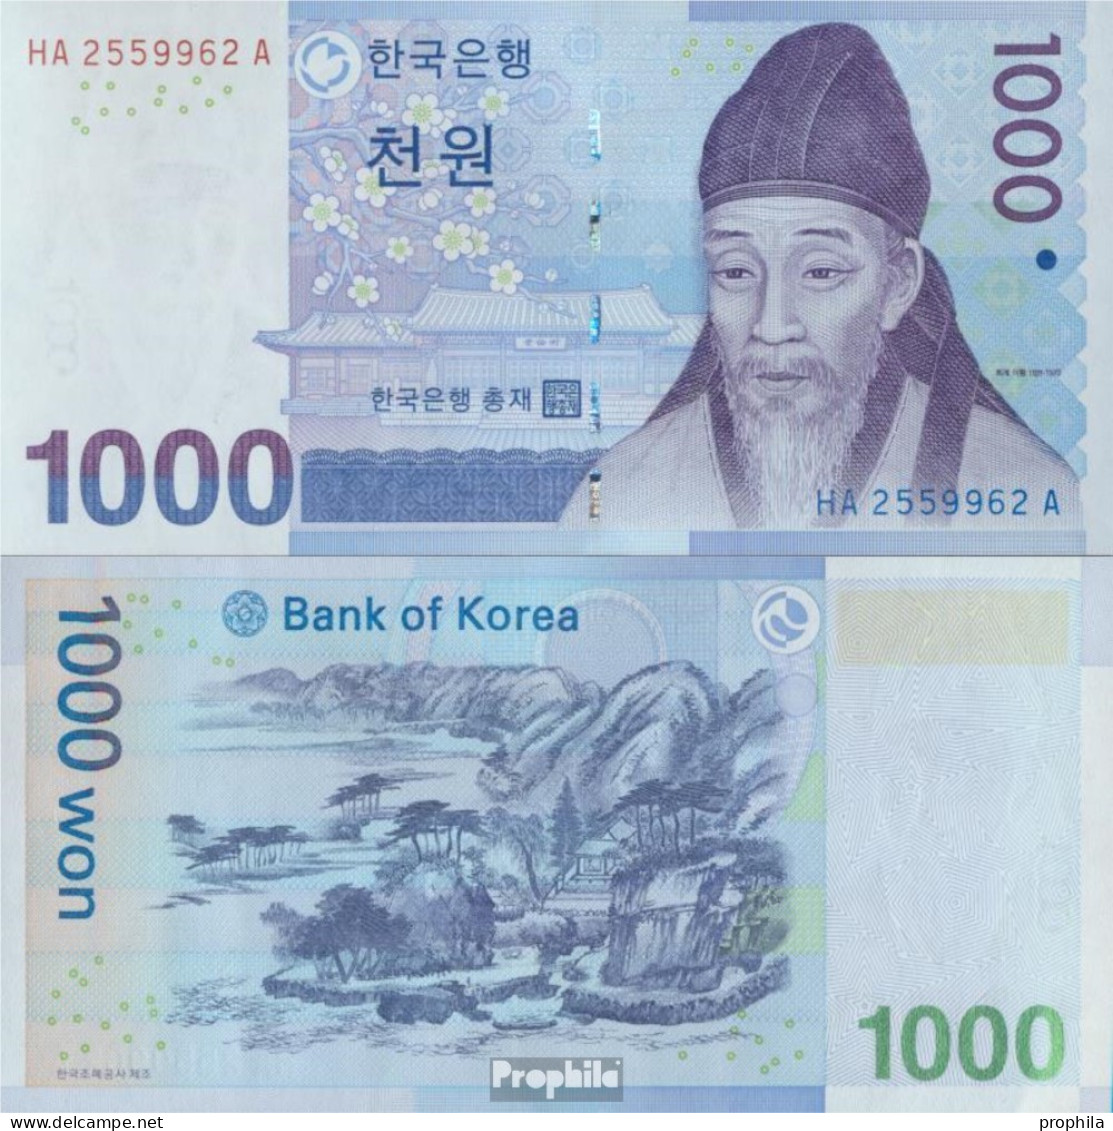 Süd-Korea Pick-Nr: 54a Bankfrisch 2007 1.000 Won - Korea, Zuid